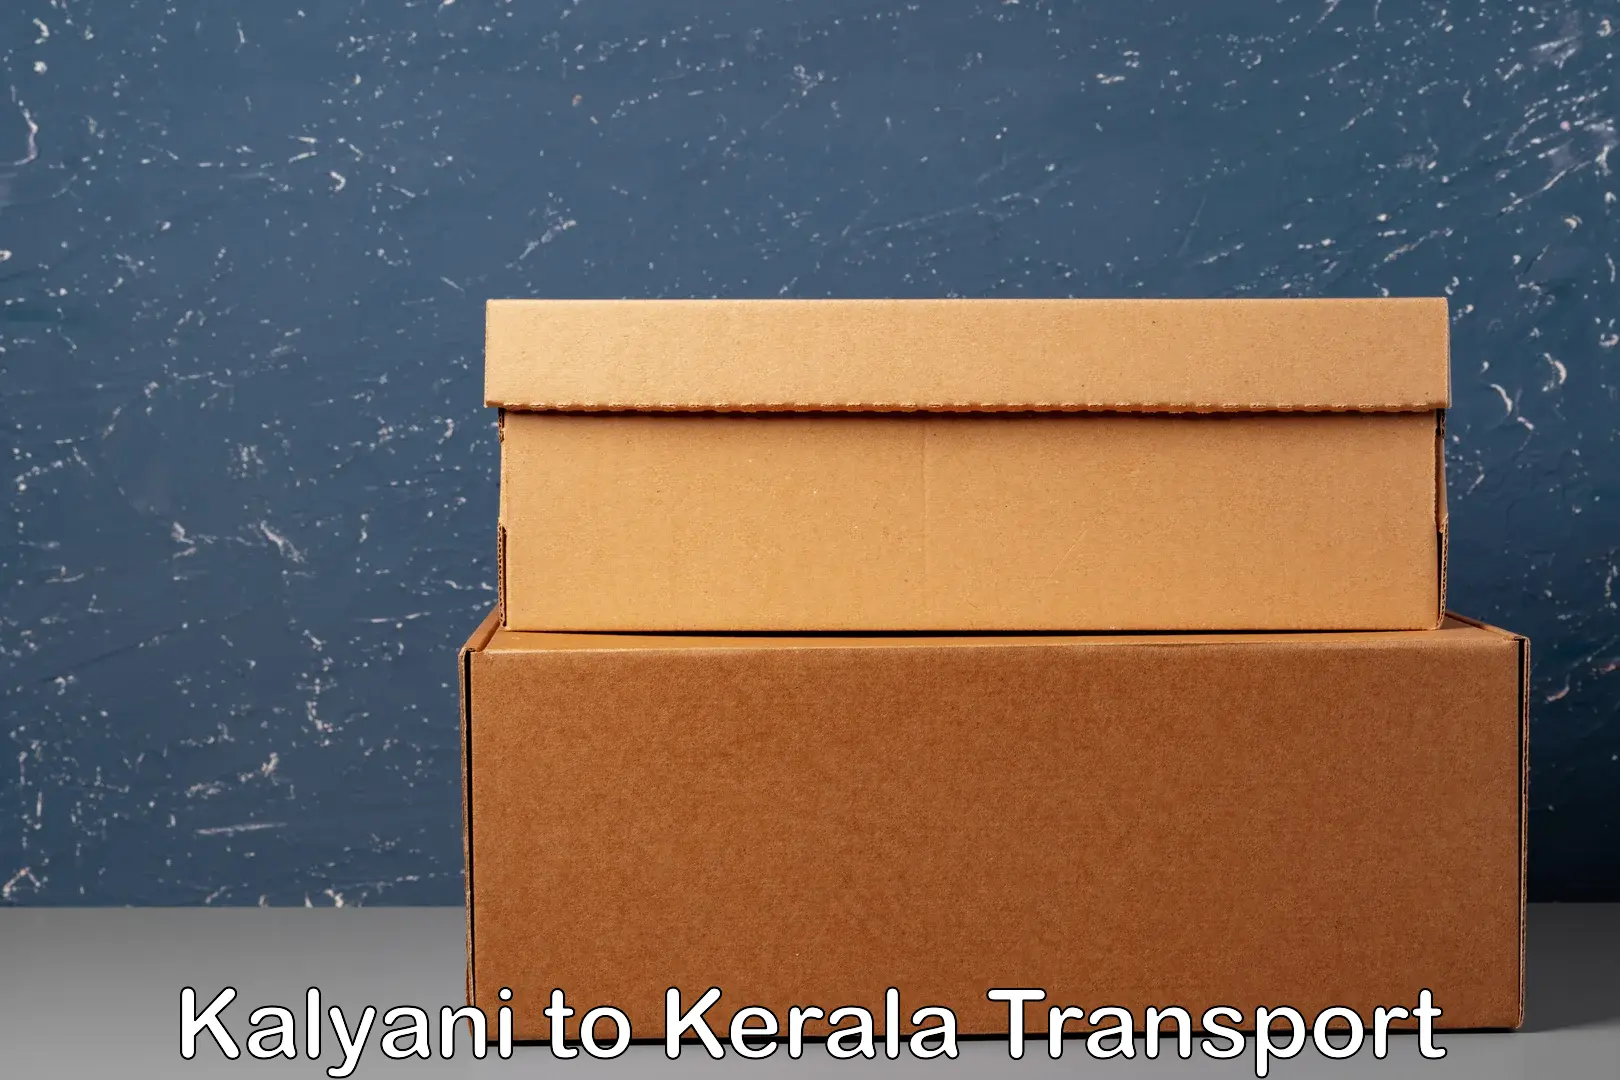 Express transport services Kalyani to Karunagappally